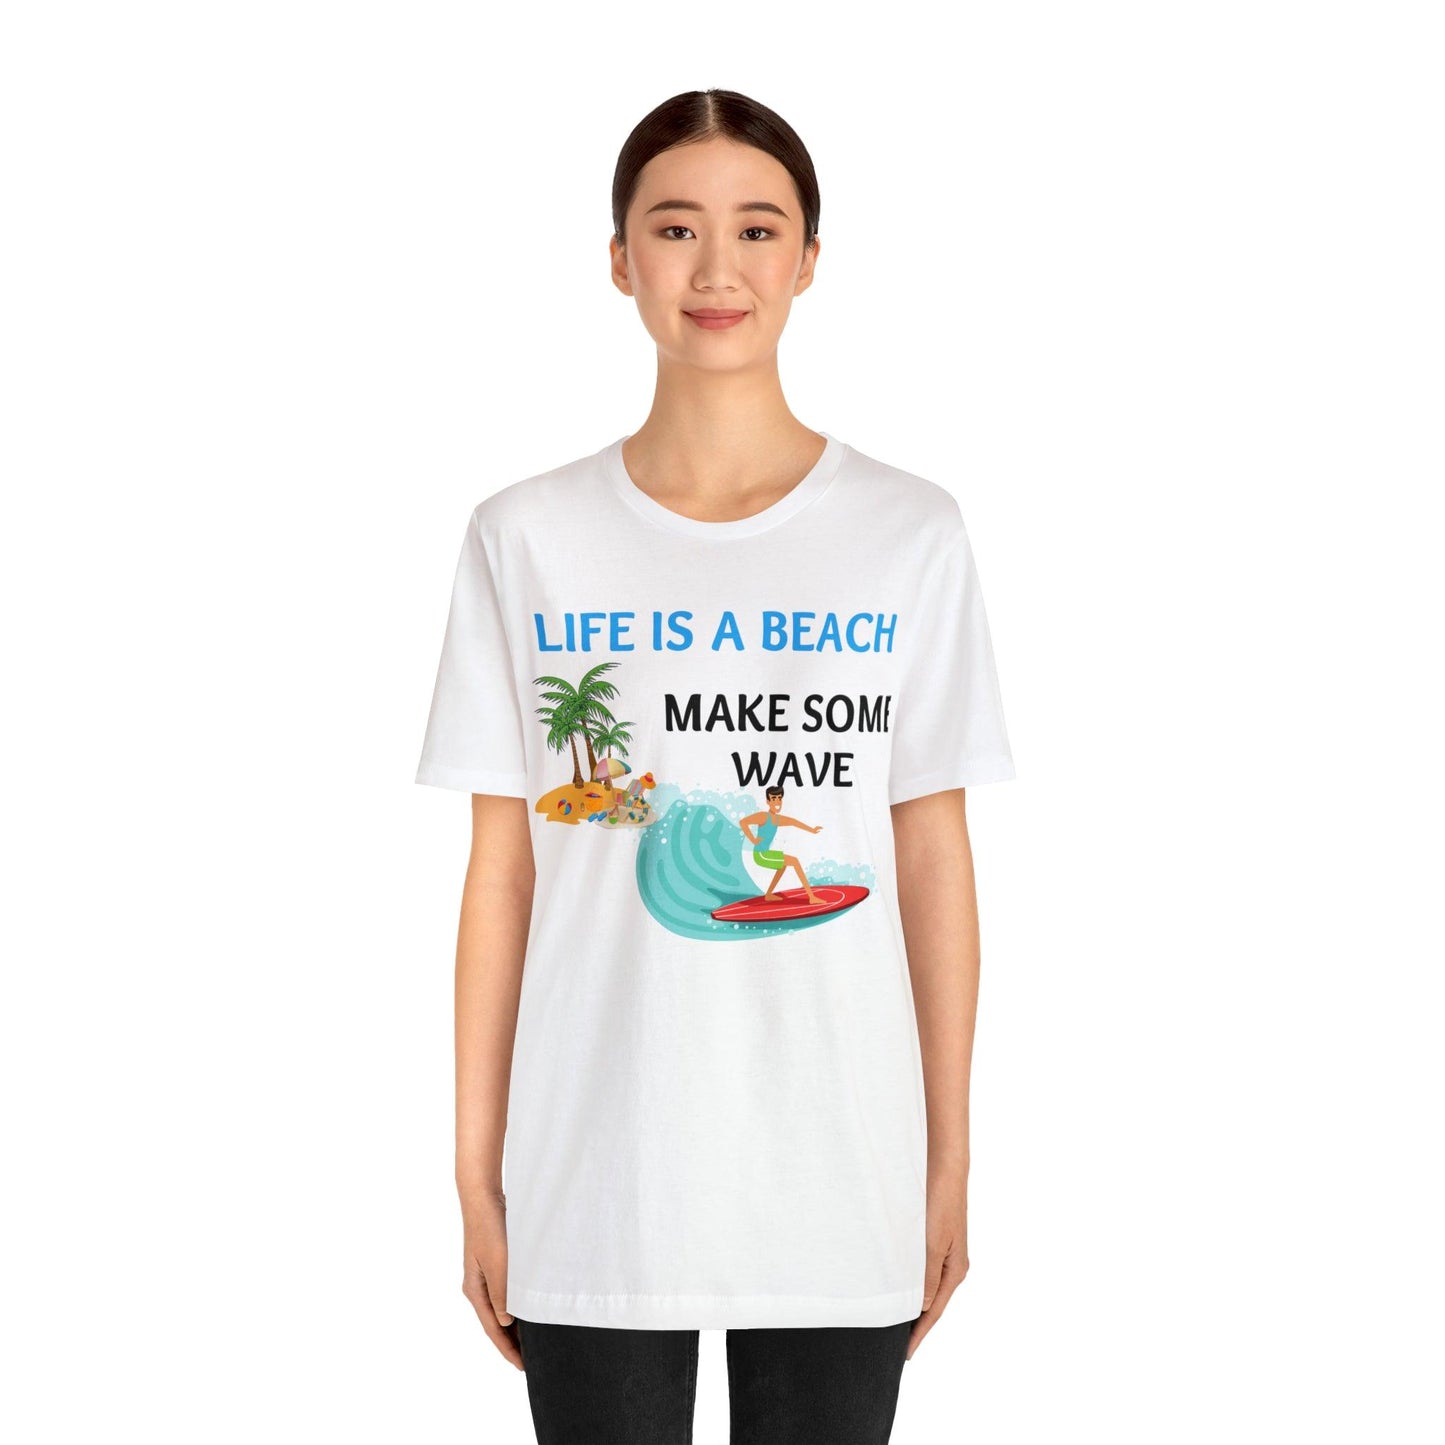 Life is a Beach shirt, Beach t-shirt, Summer shirt, Relaxing beachwear, Coastal fashion, Beach-inspired clothing, Beach adventure apparel - Giftsmojo